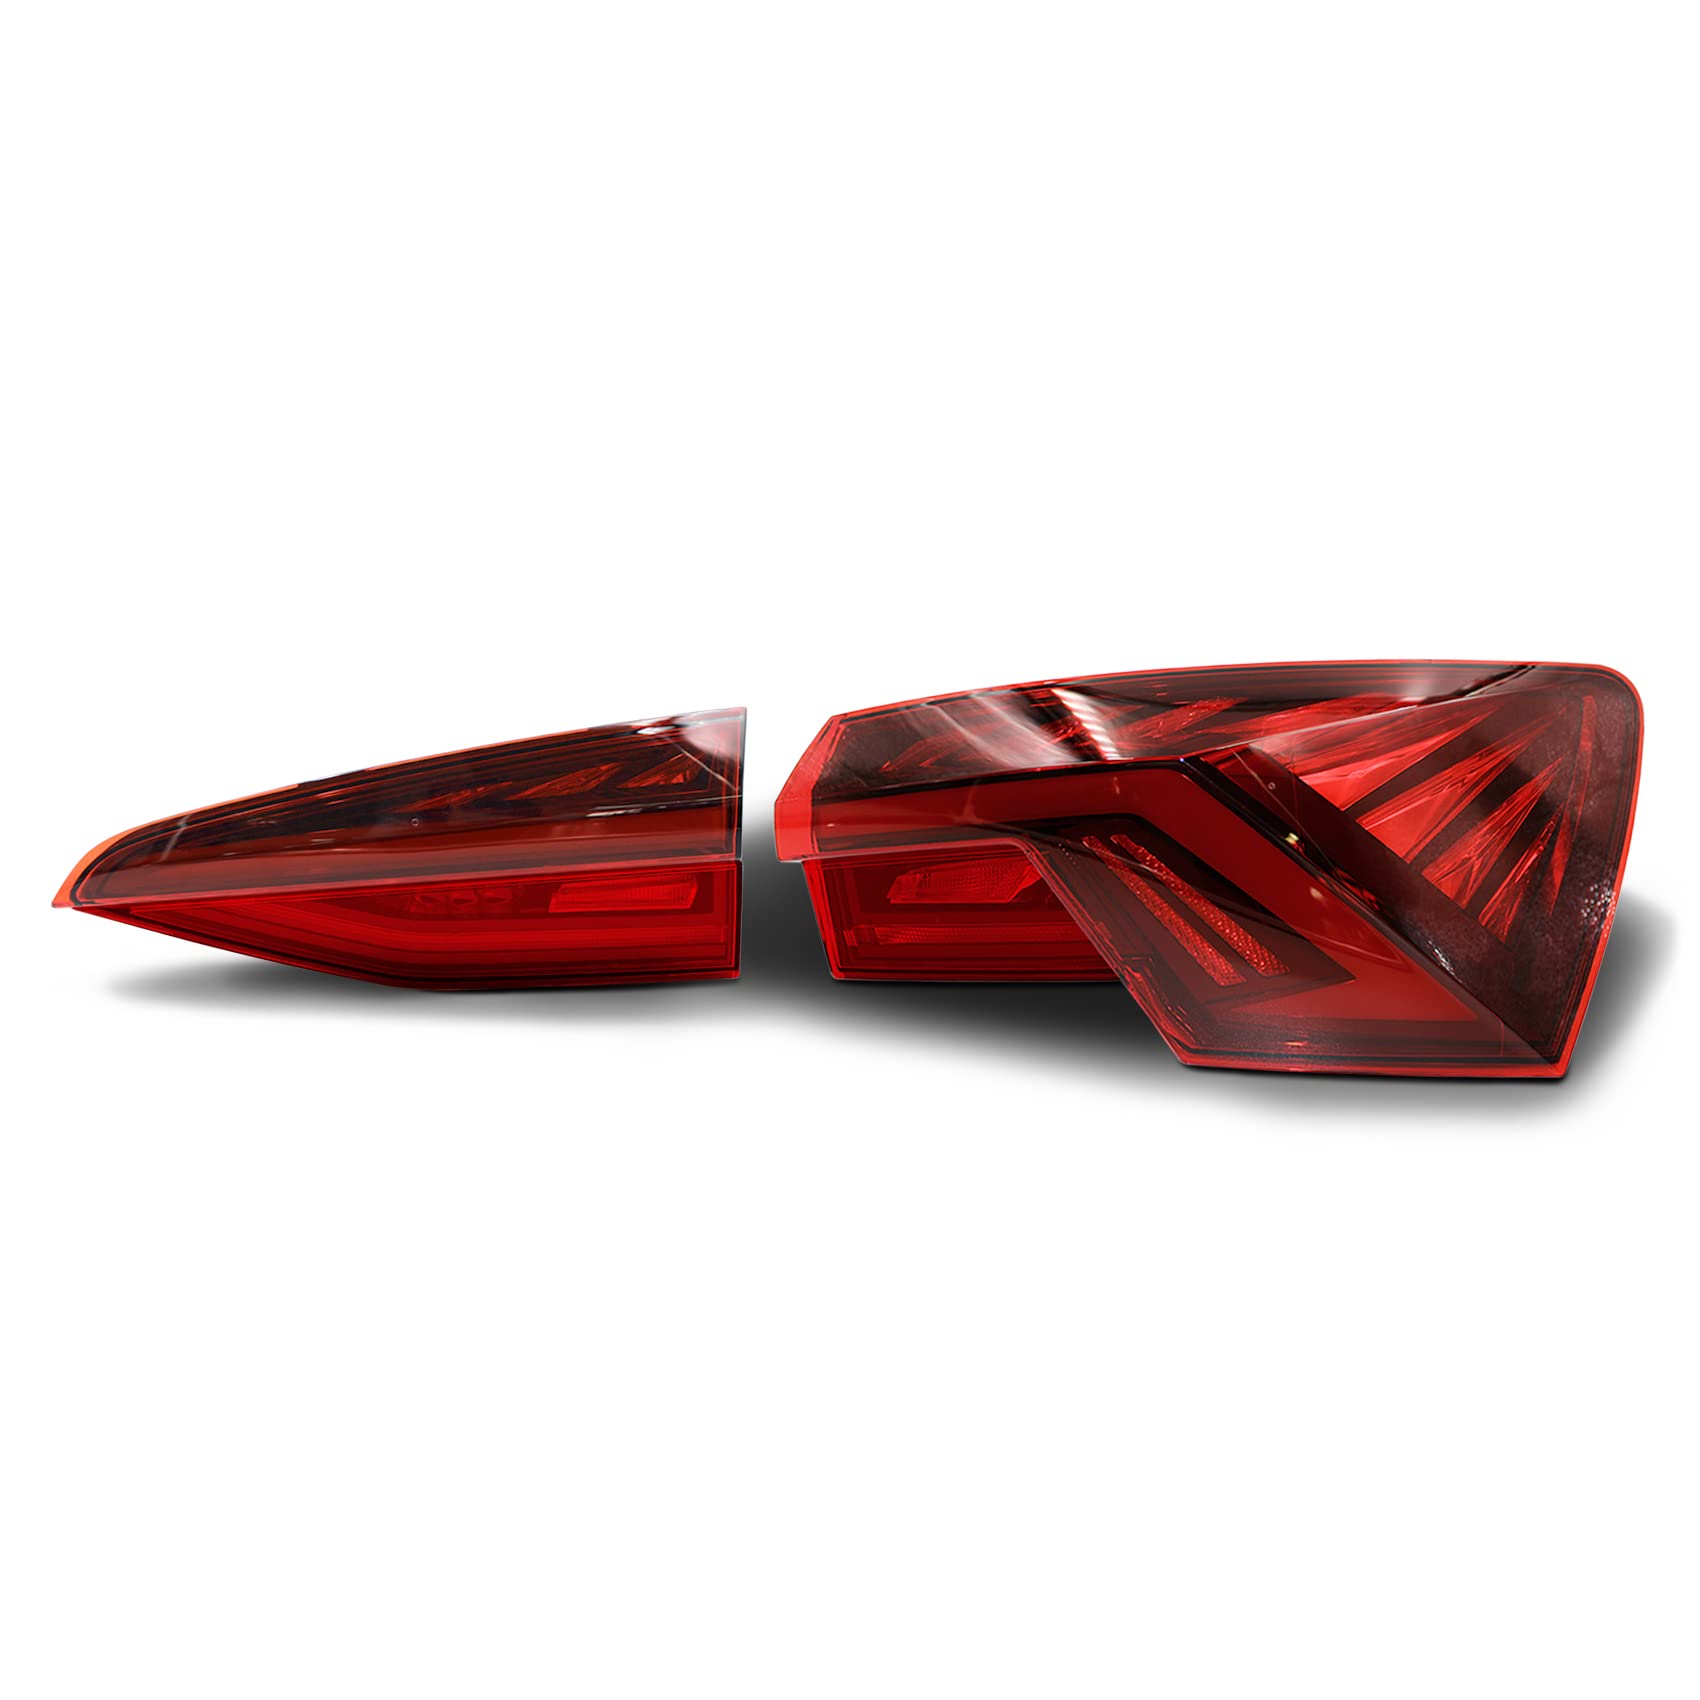 Rückleuchten Folie Set Aufkleber Tönungsfolie Heckleuchten passgenau zugeschnitten für Rückleuchte selbstklebend Kfz Auto Zubehör C066 (Red) von Finest Folia